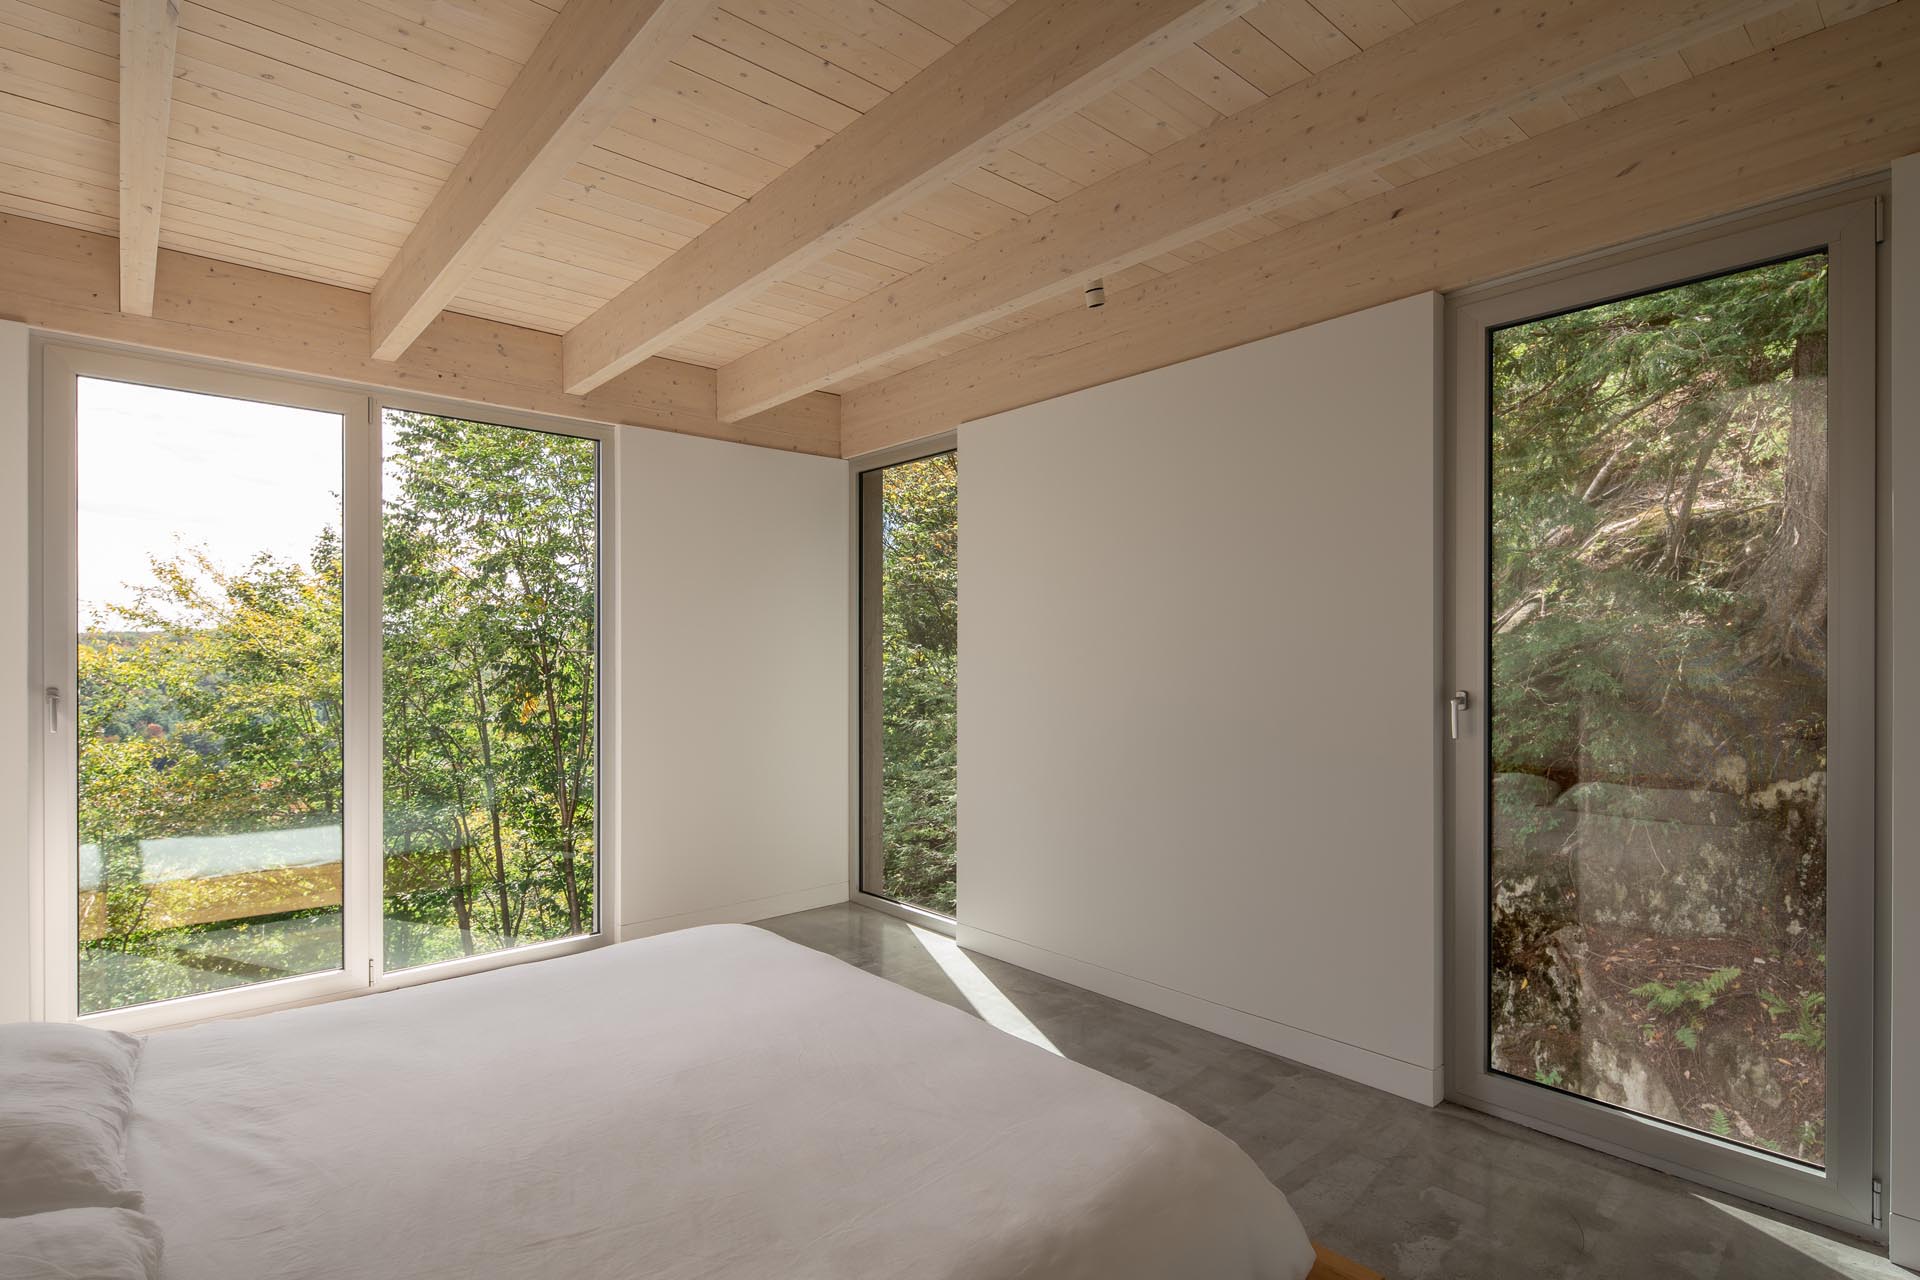 В главной спальне с минималистичной мебелью есть высокие окна, обрамляющие деревья и скалы снаружи.